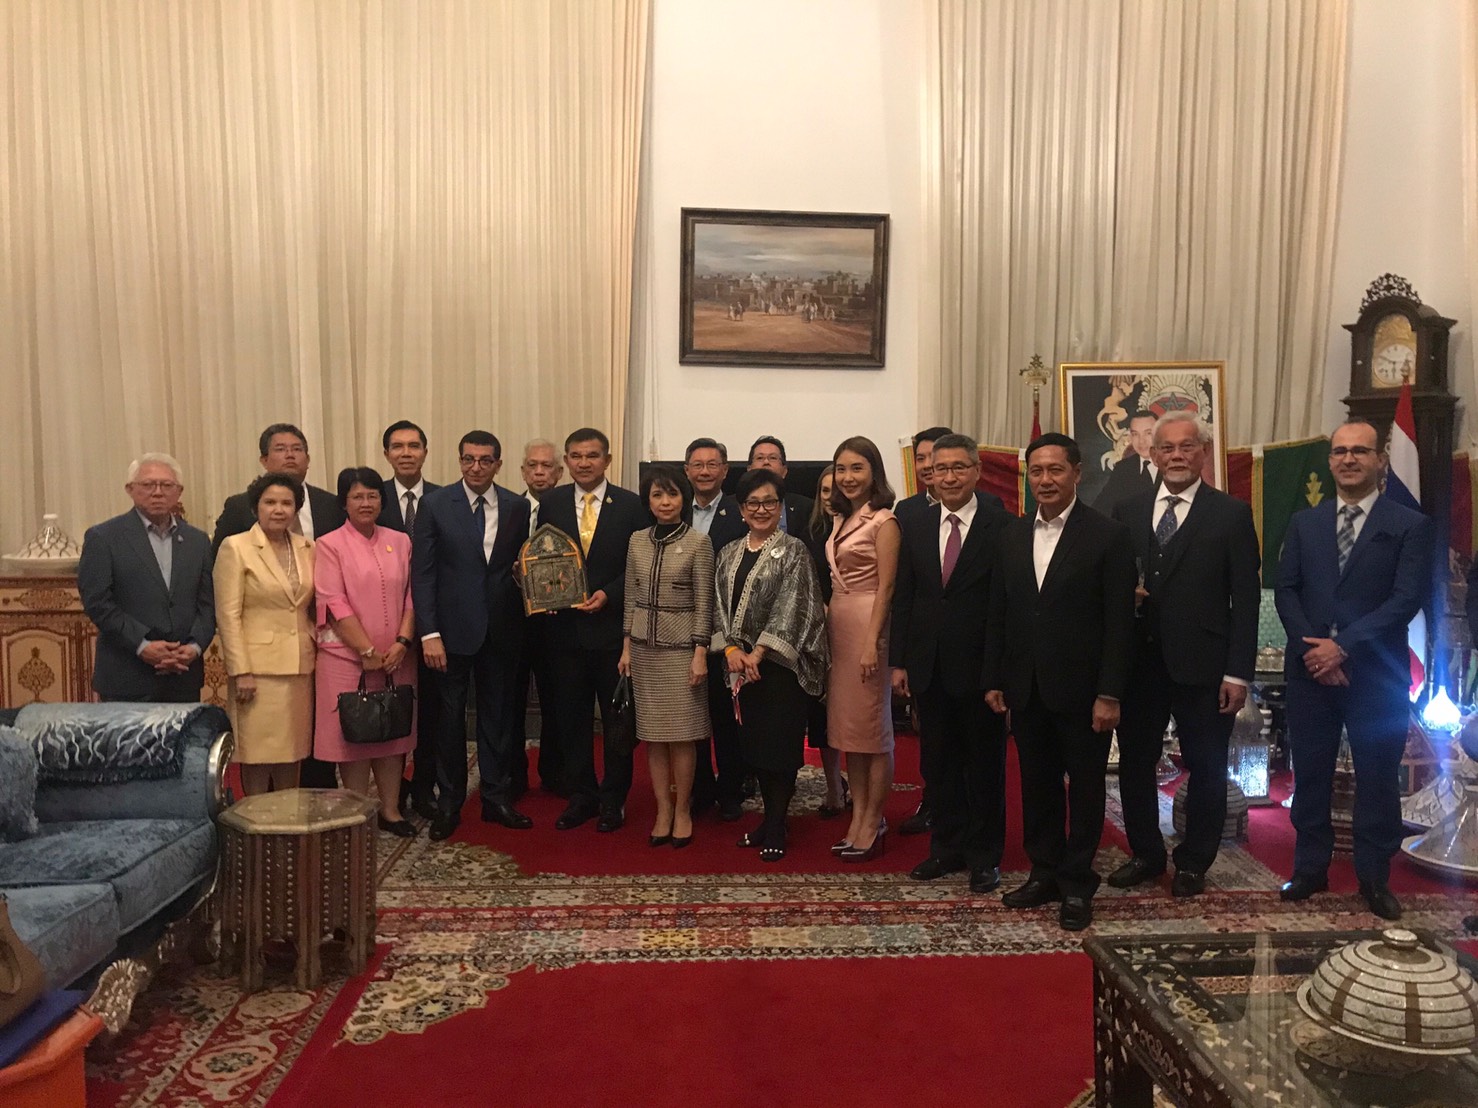 2 October 2019, at the Maroccan Ambassador’s residence, Chan Tad Mai Road, Bangkok